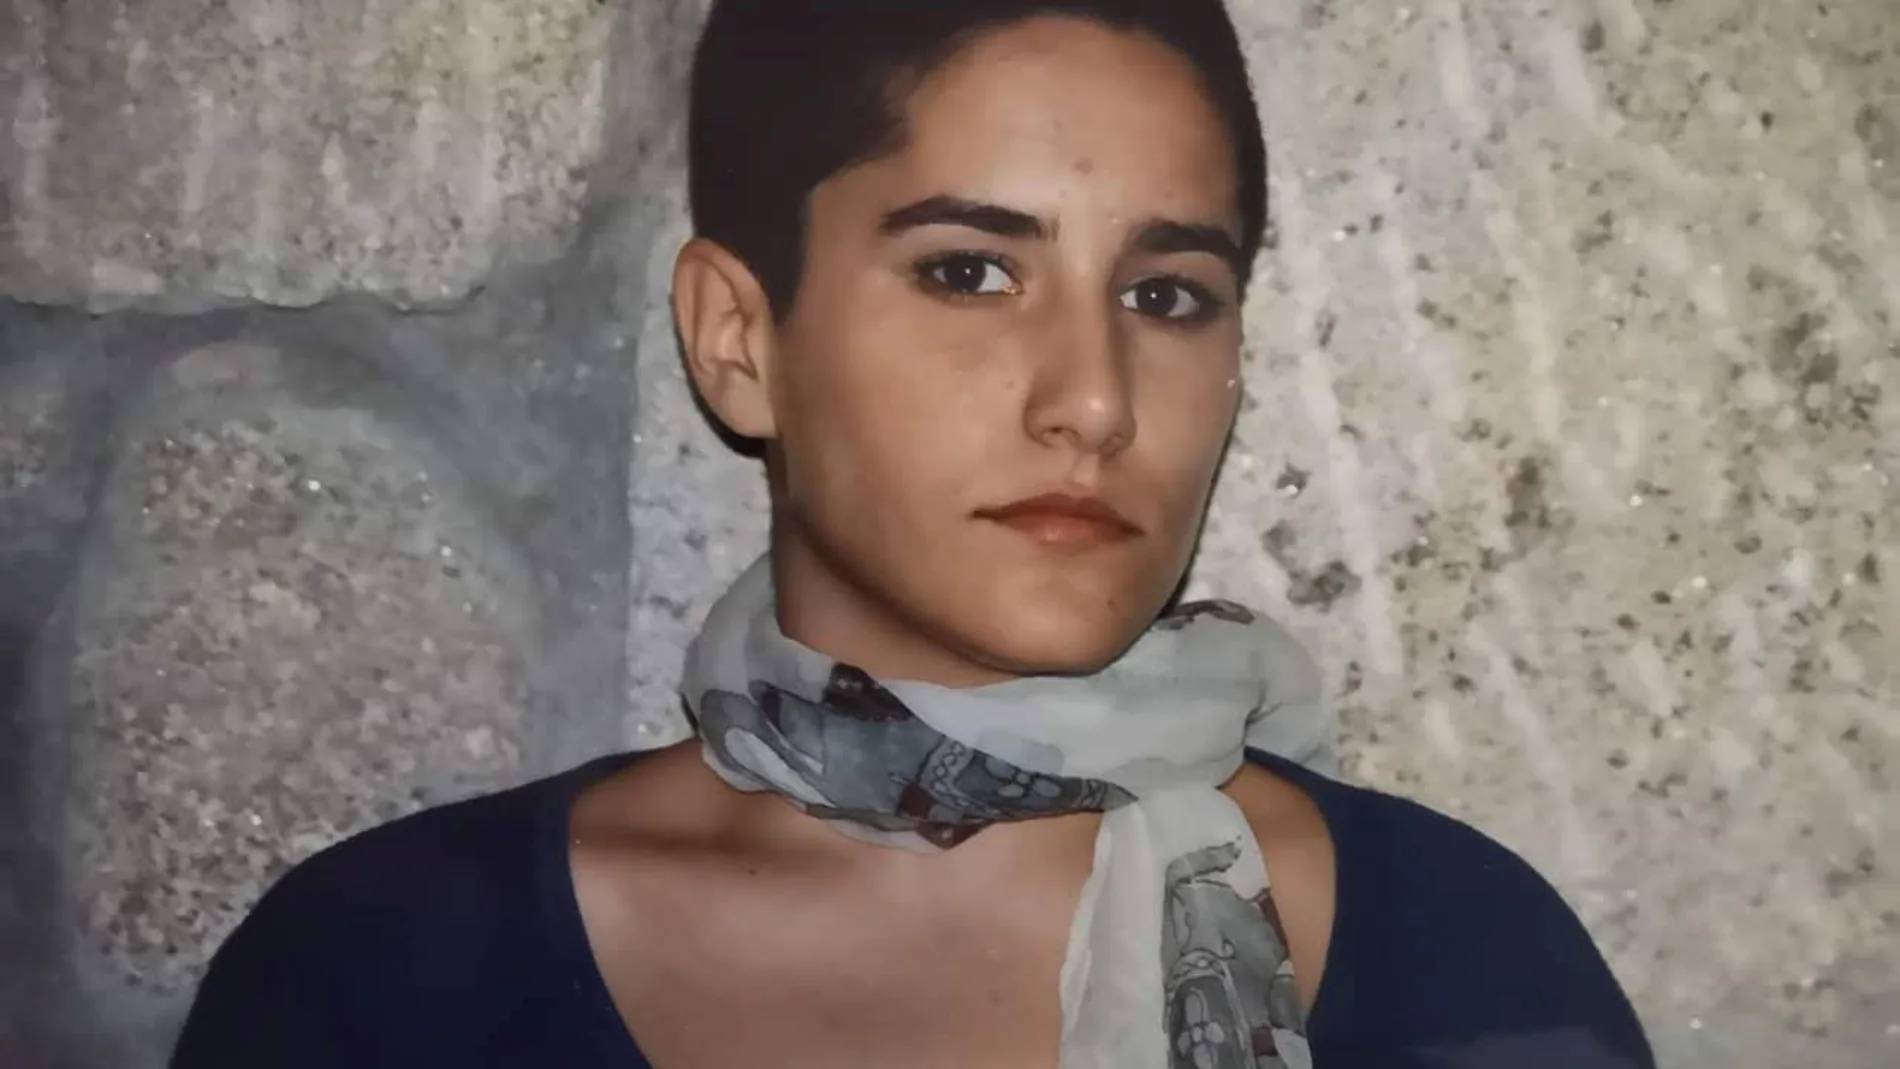 Déborah Fernández desapareció el 30 de abril de 2002 cuando solo tenía 21 años. Su cadáver fue hallado una semana después en una cuneta